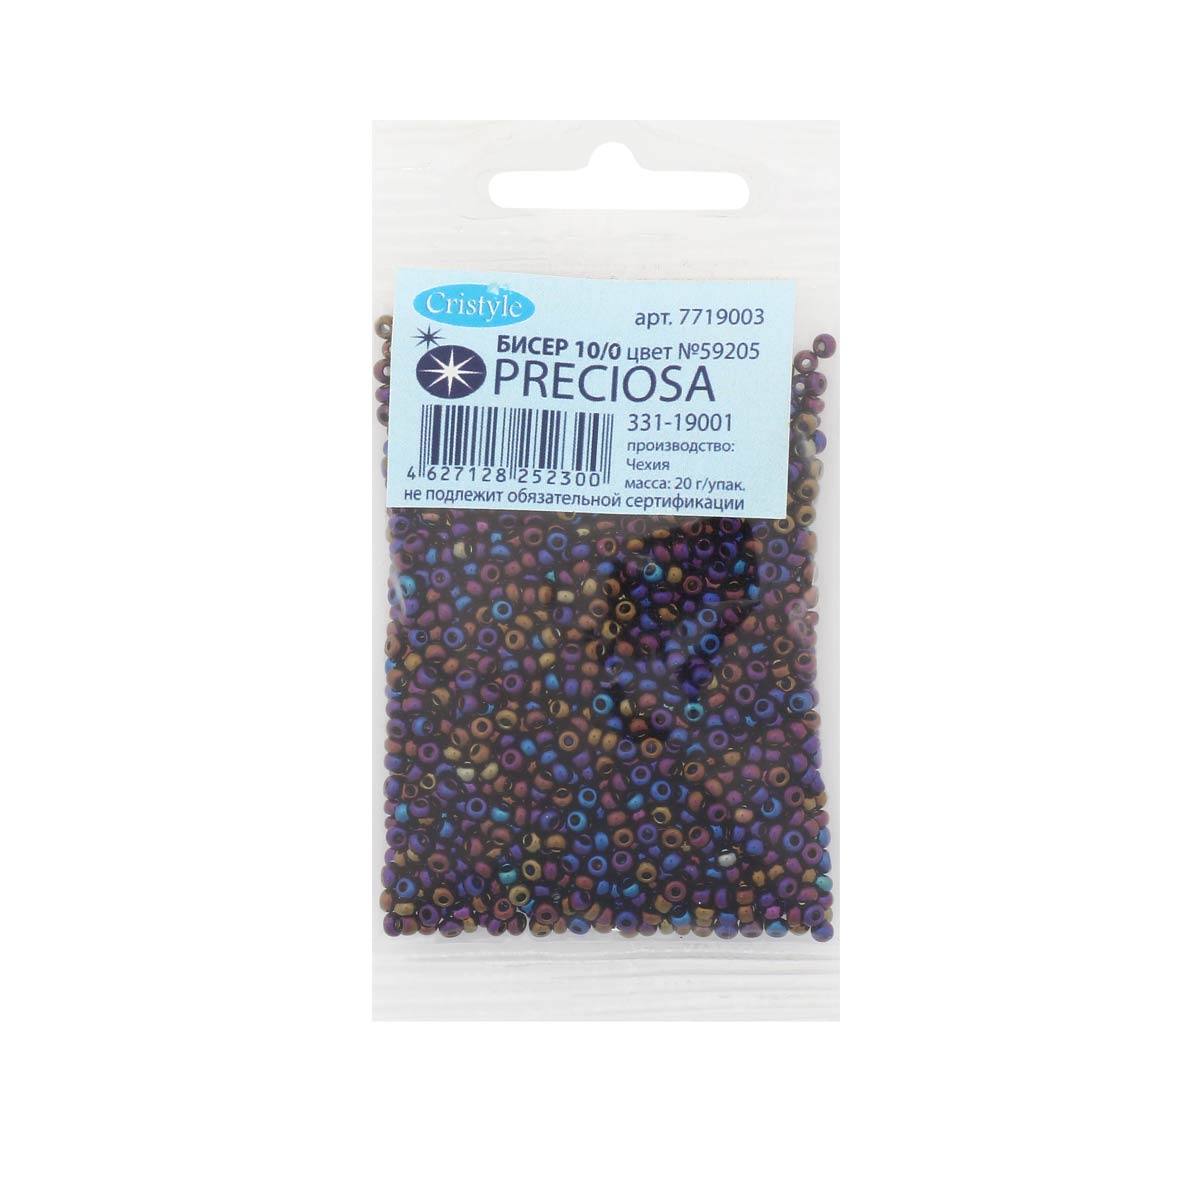 Бисер Preciosa чешский непрозрачный с радужным покрытием 10/0 20 гр Прециоза 59205 синий - фото 3